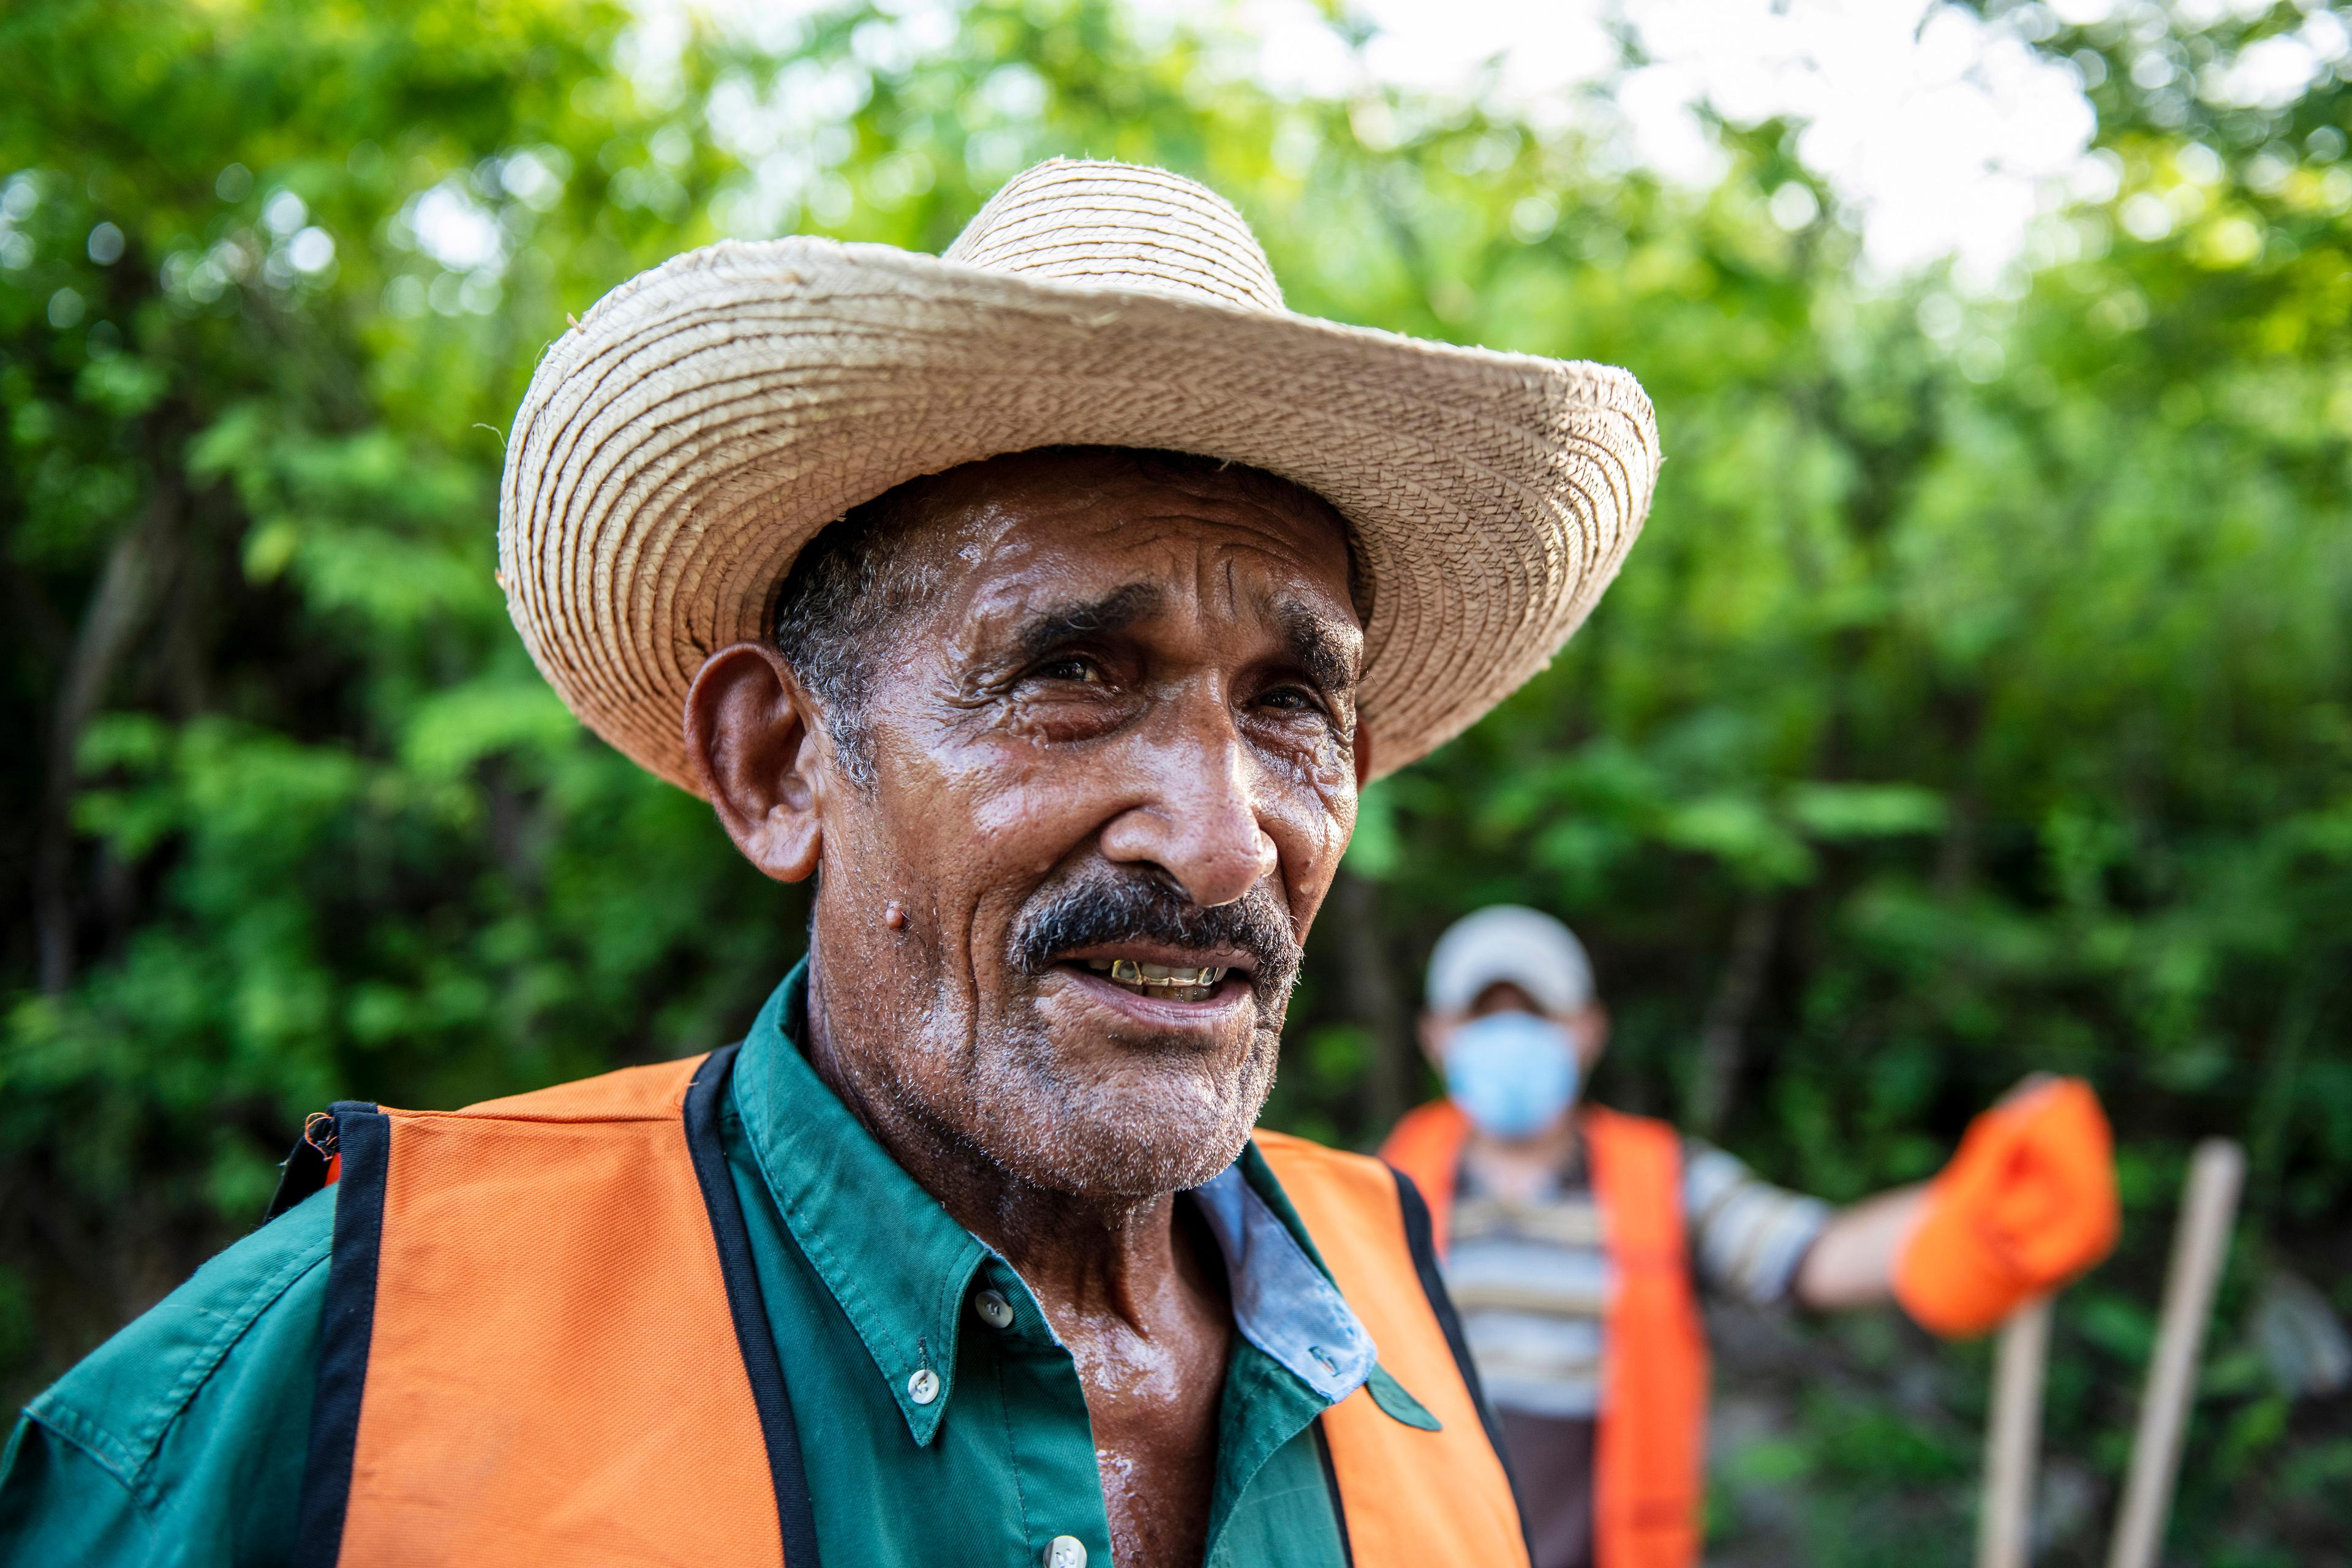 Portrait d’un homme âgé et moustachu portant un chapeau et un gilet orange. En arrière-plan, on distingue des arbres et un autre homme.